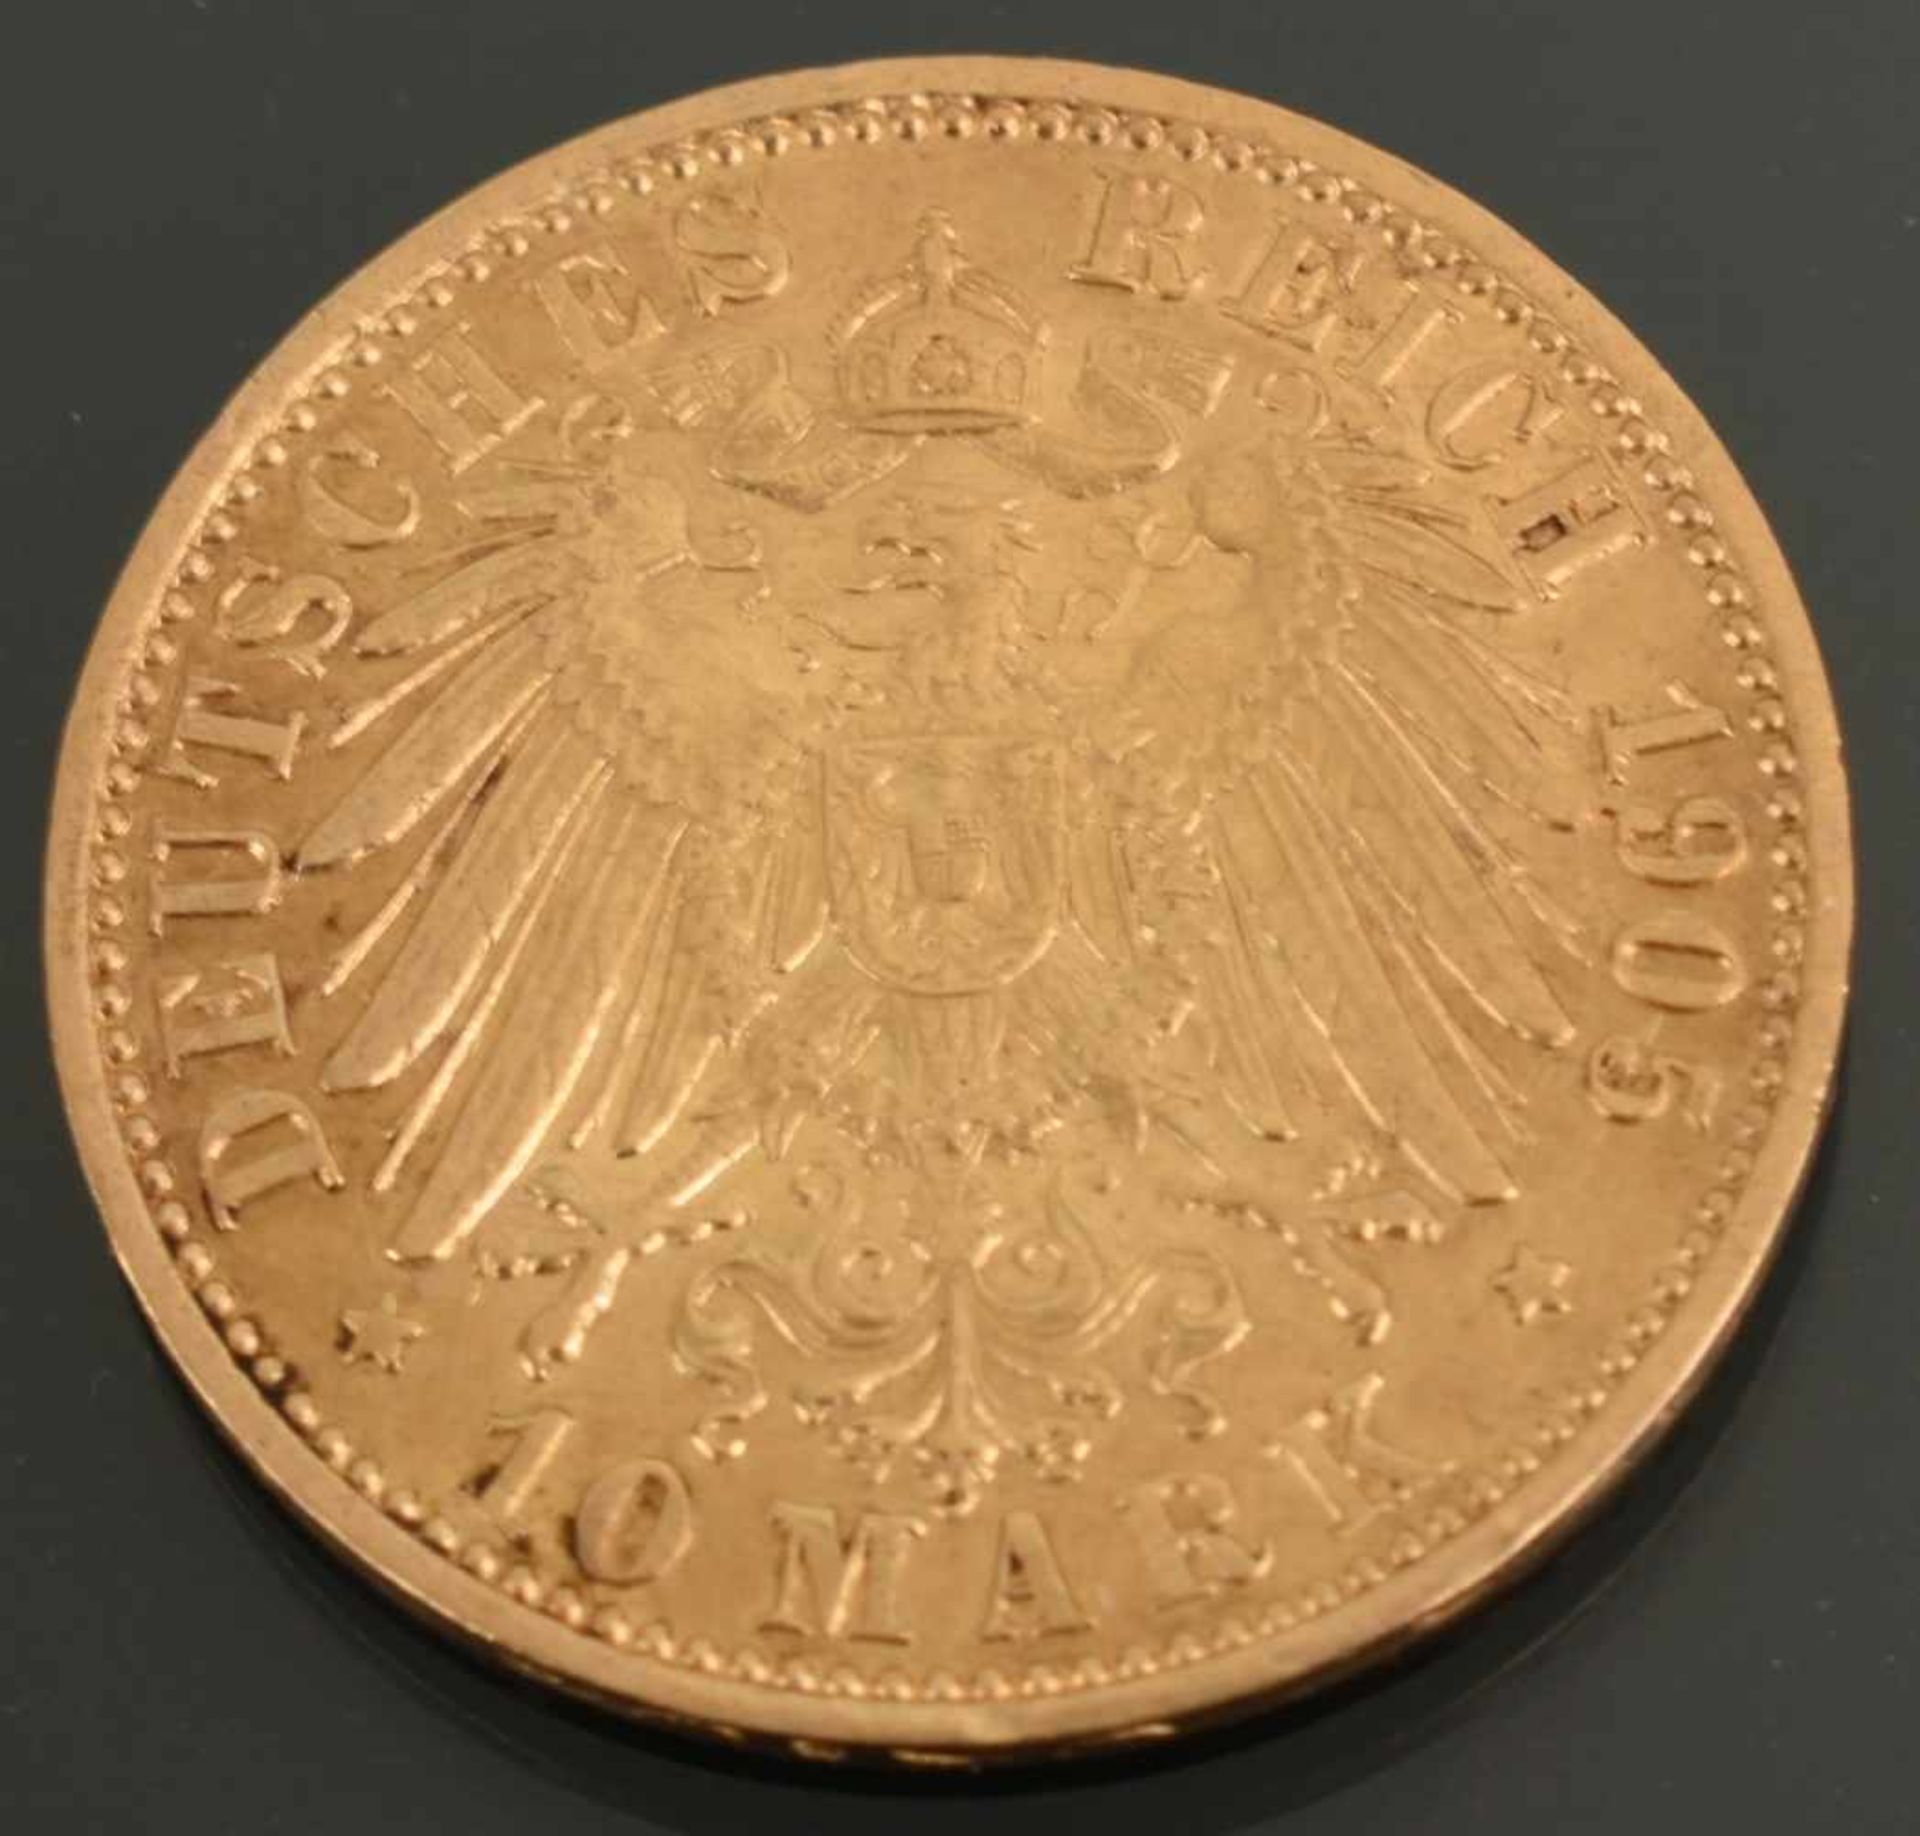 Goldmünze Kaiserreich - Preußen 1905 10 Mark in Gold, 900/1000, 3,98 g, D ca. 19,5 mm, av. Wilhelm - Bild 3 aus 3